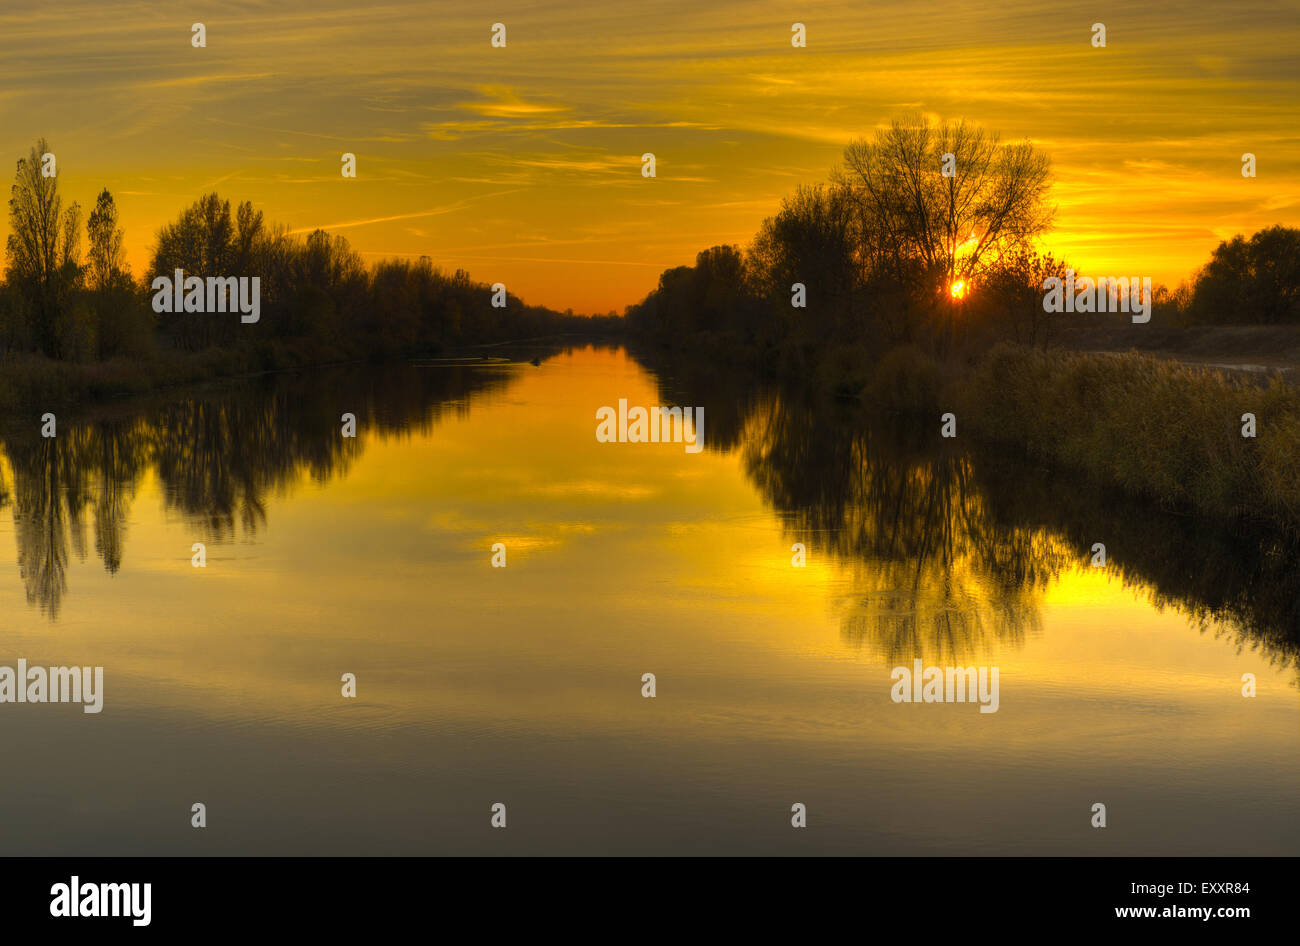 L'heure du coucher du soleil à paysage rivière Orel - Ukrainien Banque D'Images